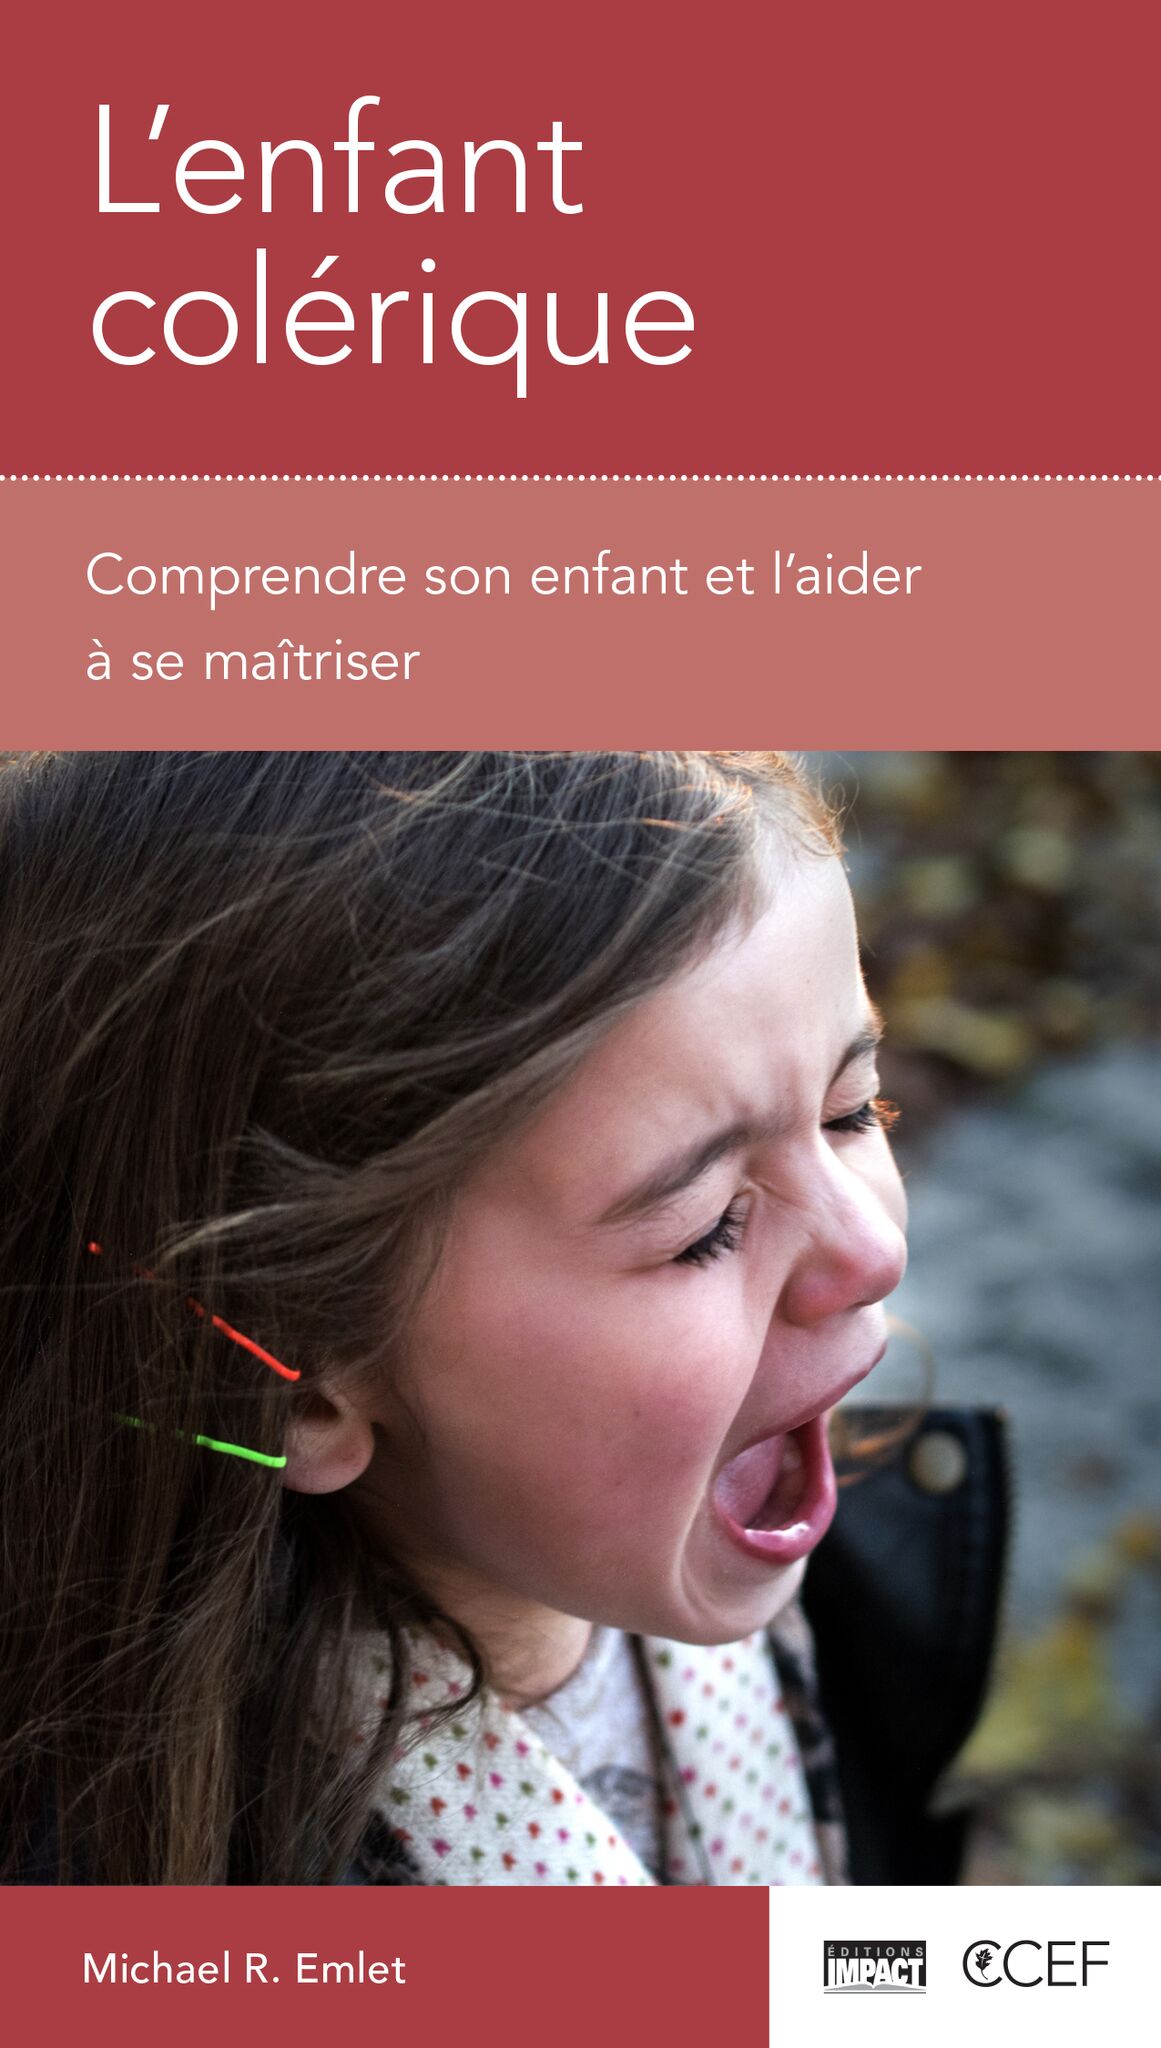 Enfant colérique (L') - Comprendre son enfant et l'aider à se maîtriser [brochure CCEF]